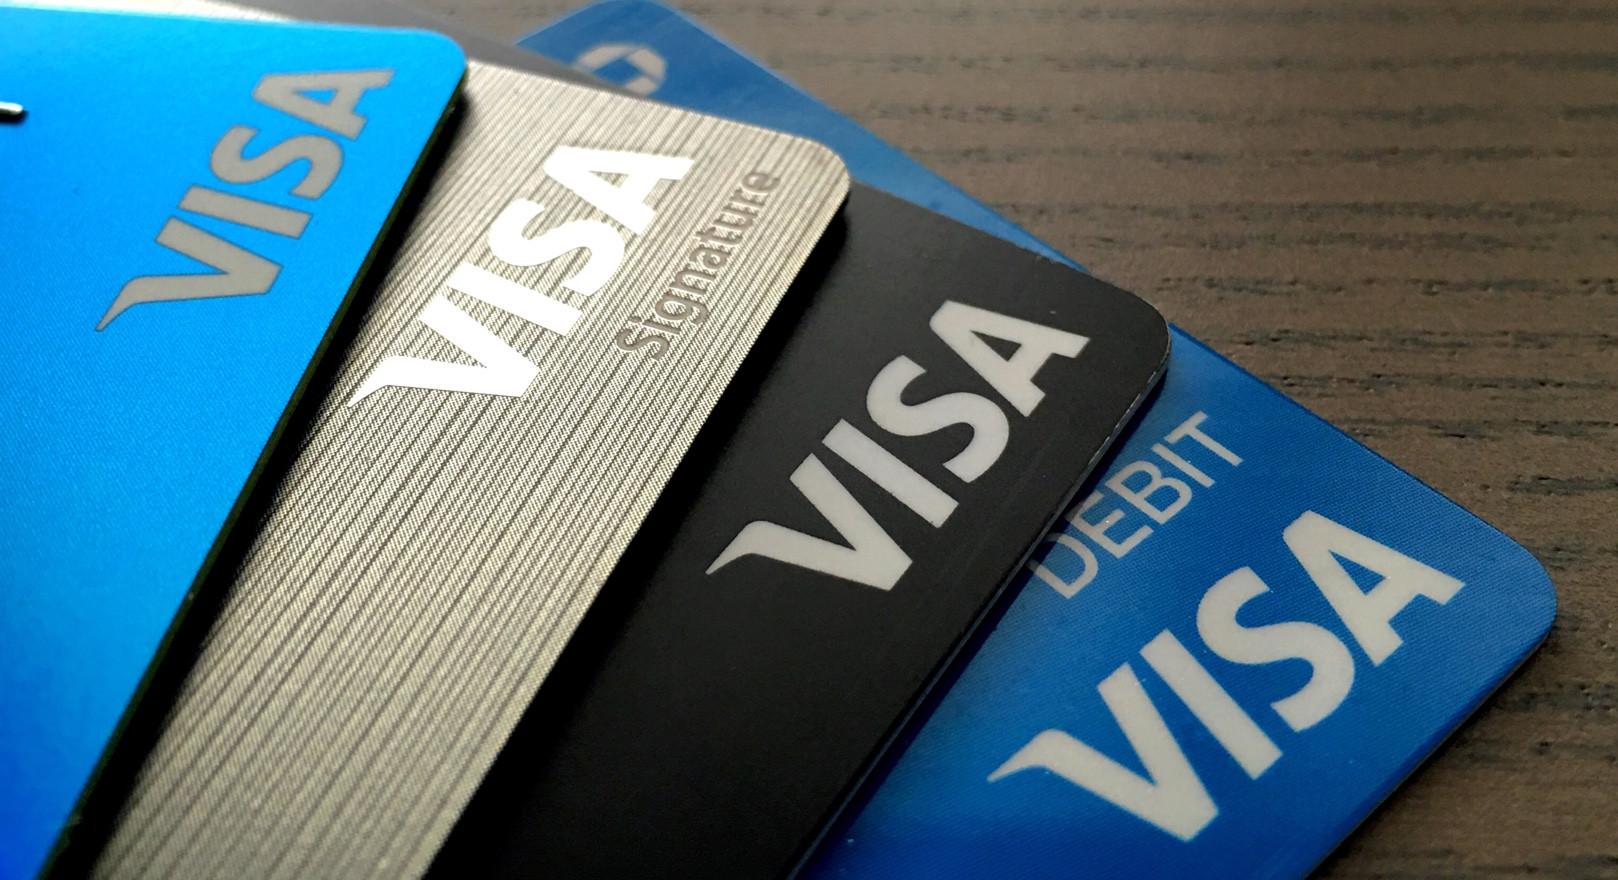 Dịch vụ làm visa đi châu Âu giá rẻ - chuẩn bị về tài chính